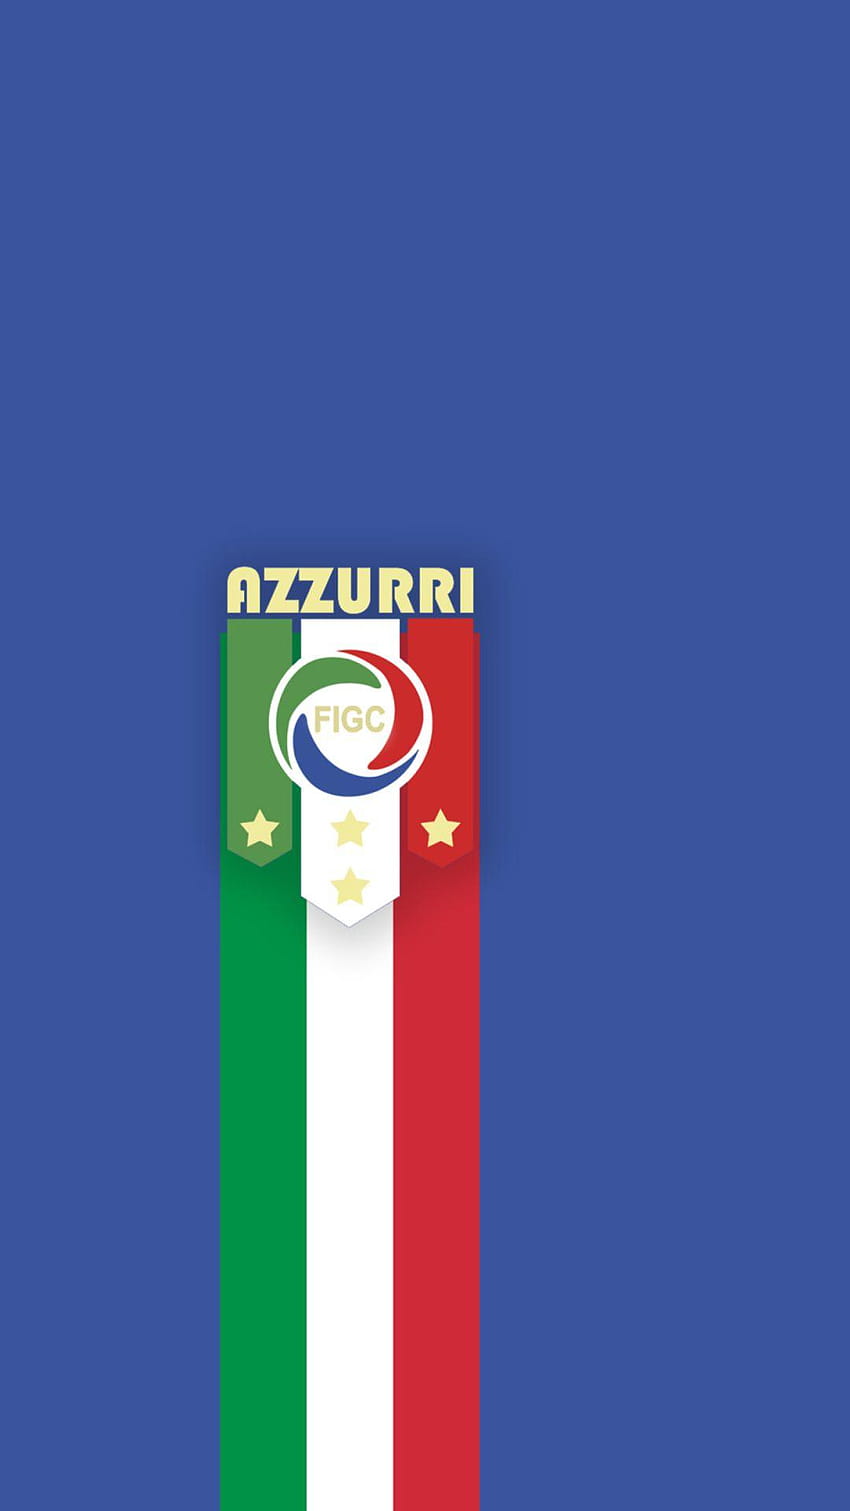 イタリア ナショナル フットボール チーム、高精細イタリア、azzurri italia ワイド スクリーン HD電話の壁紙